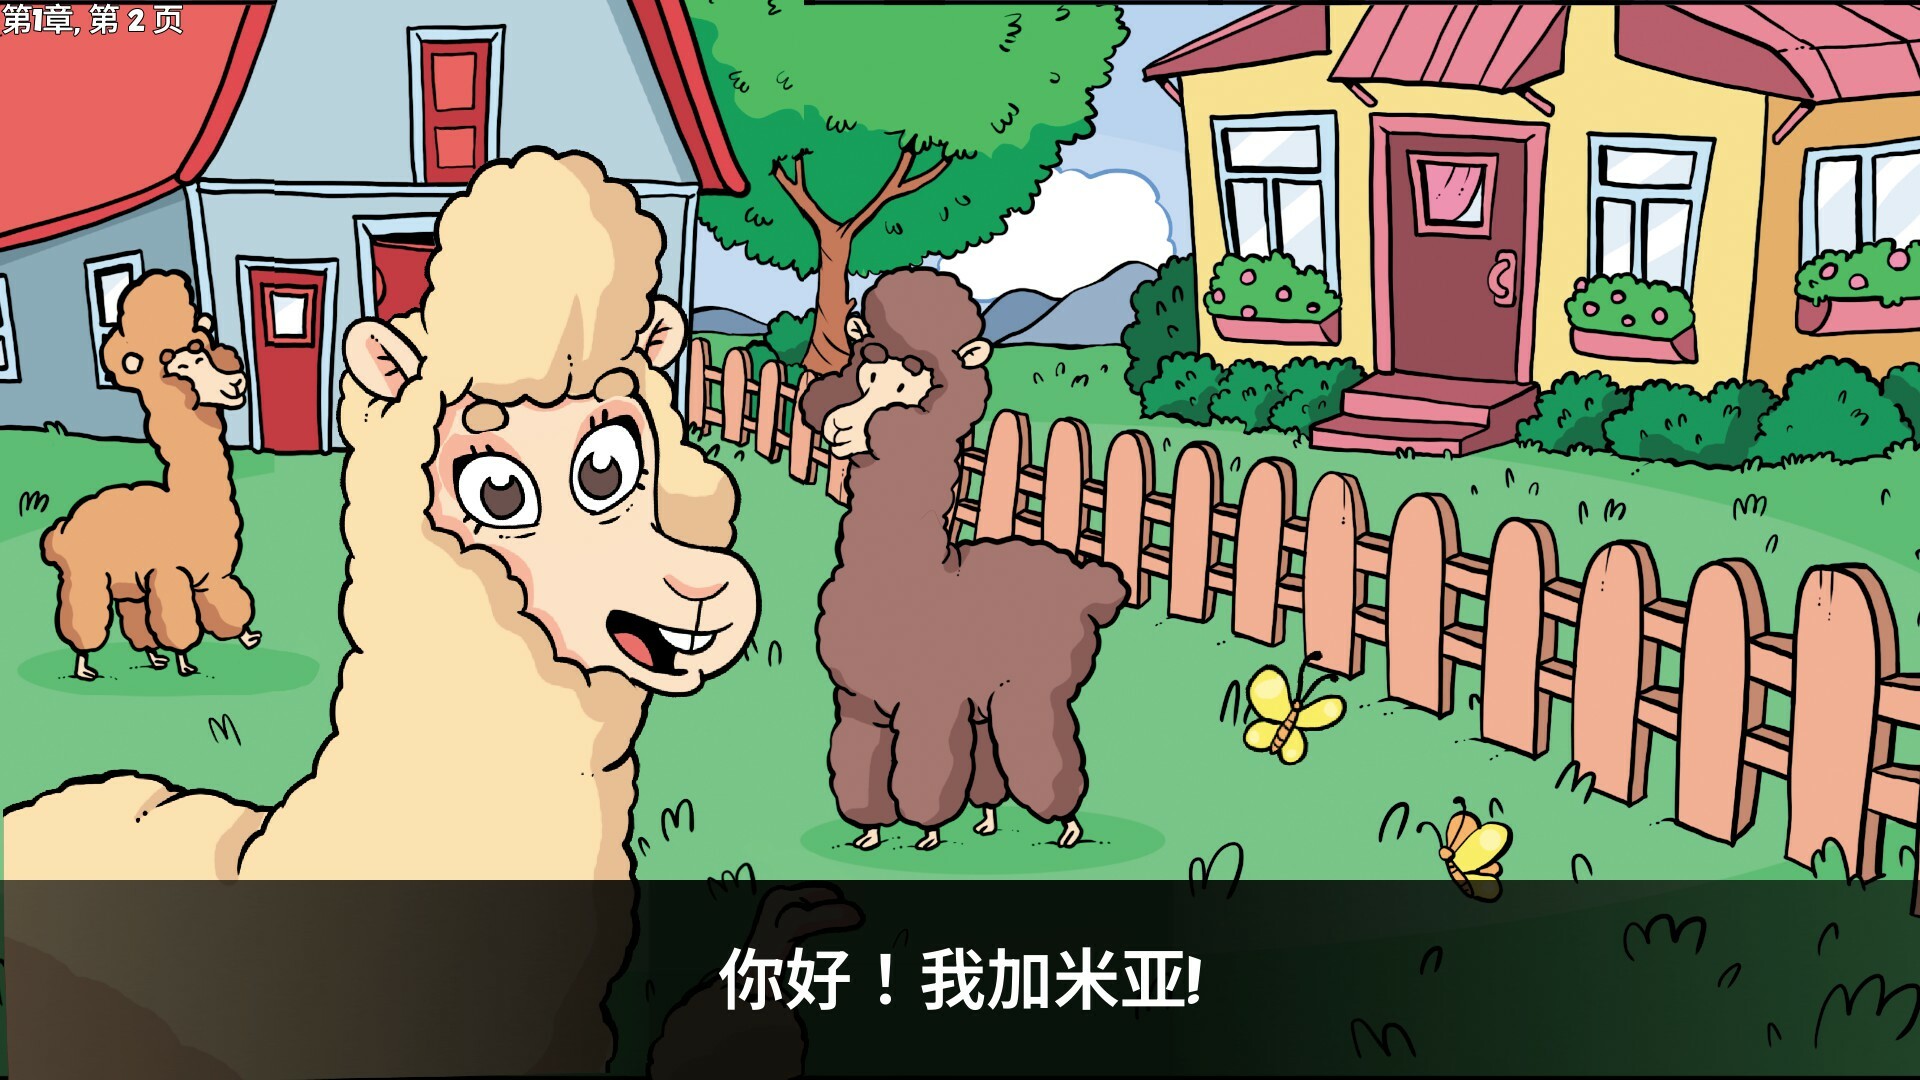 羊驼想知道为什么|官方中文|NSZ|原版|Alpaca Wonders Why插图